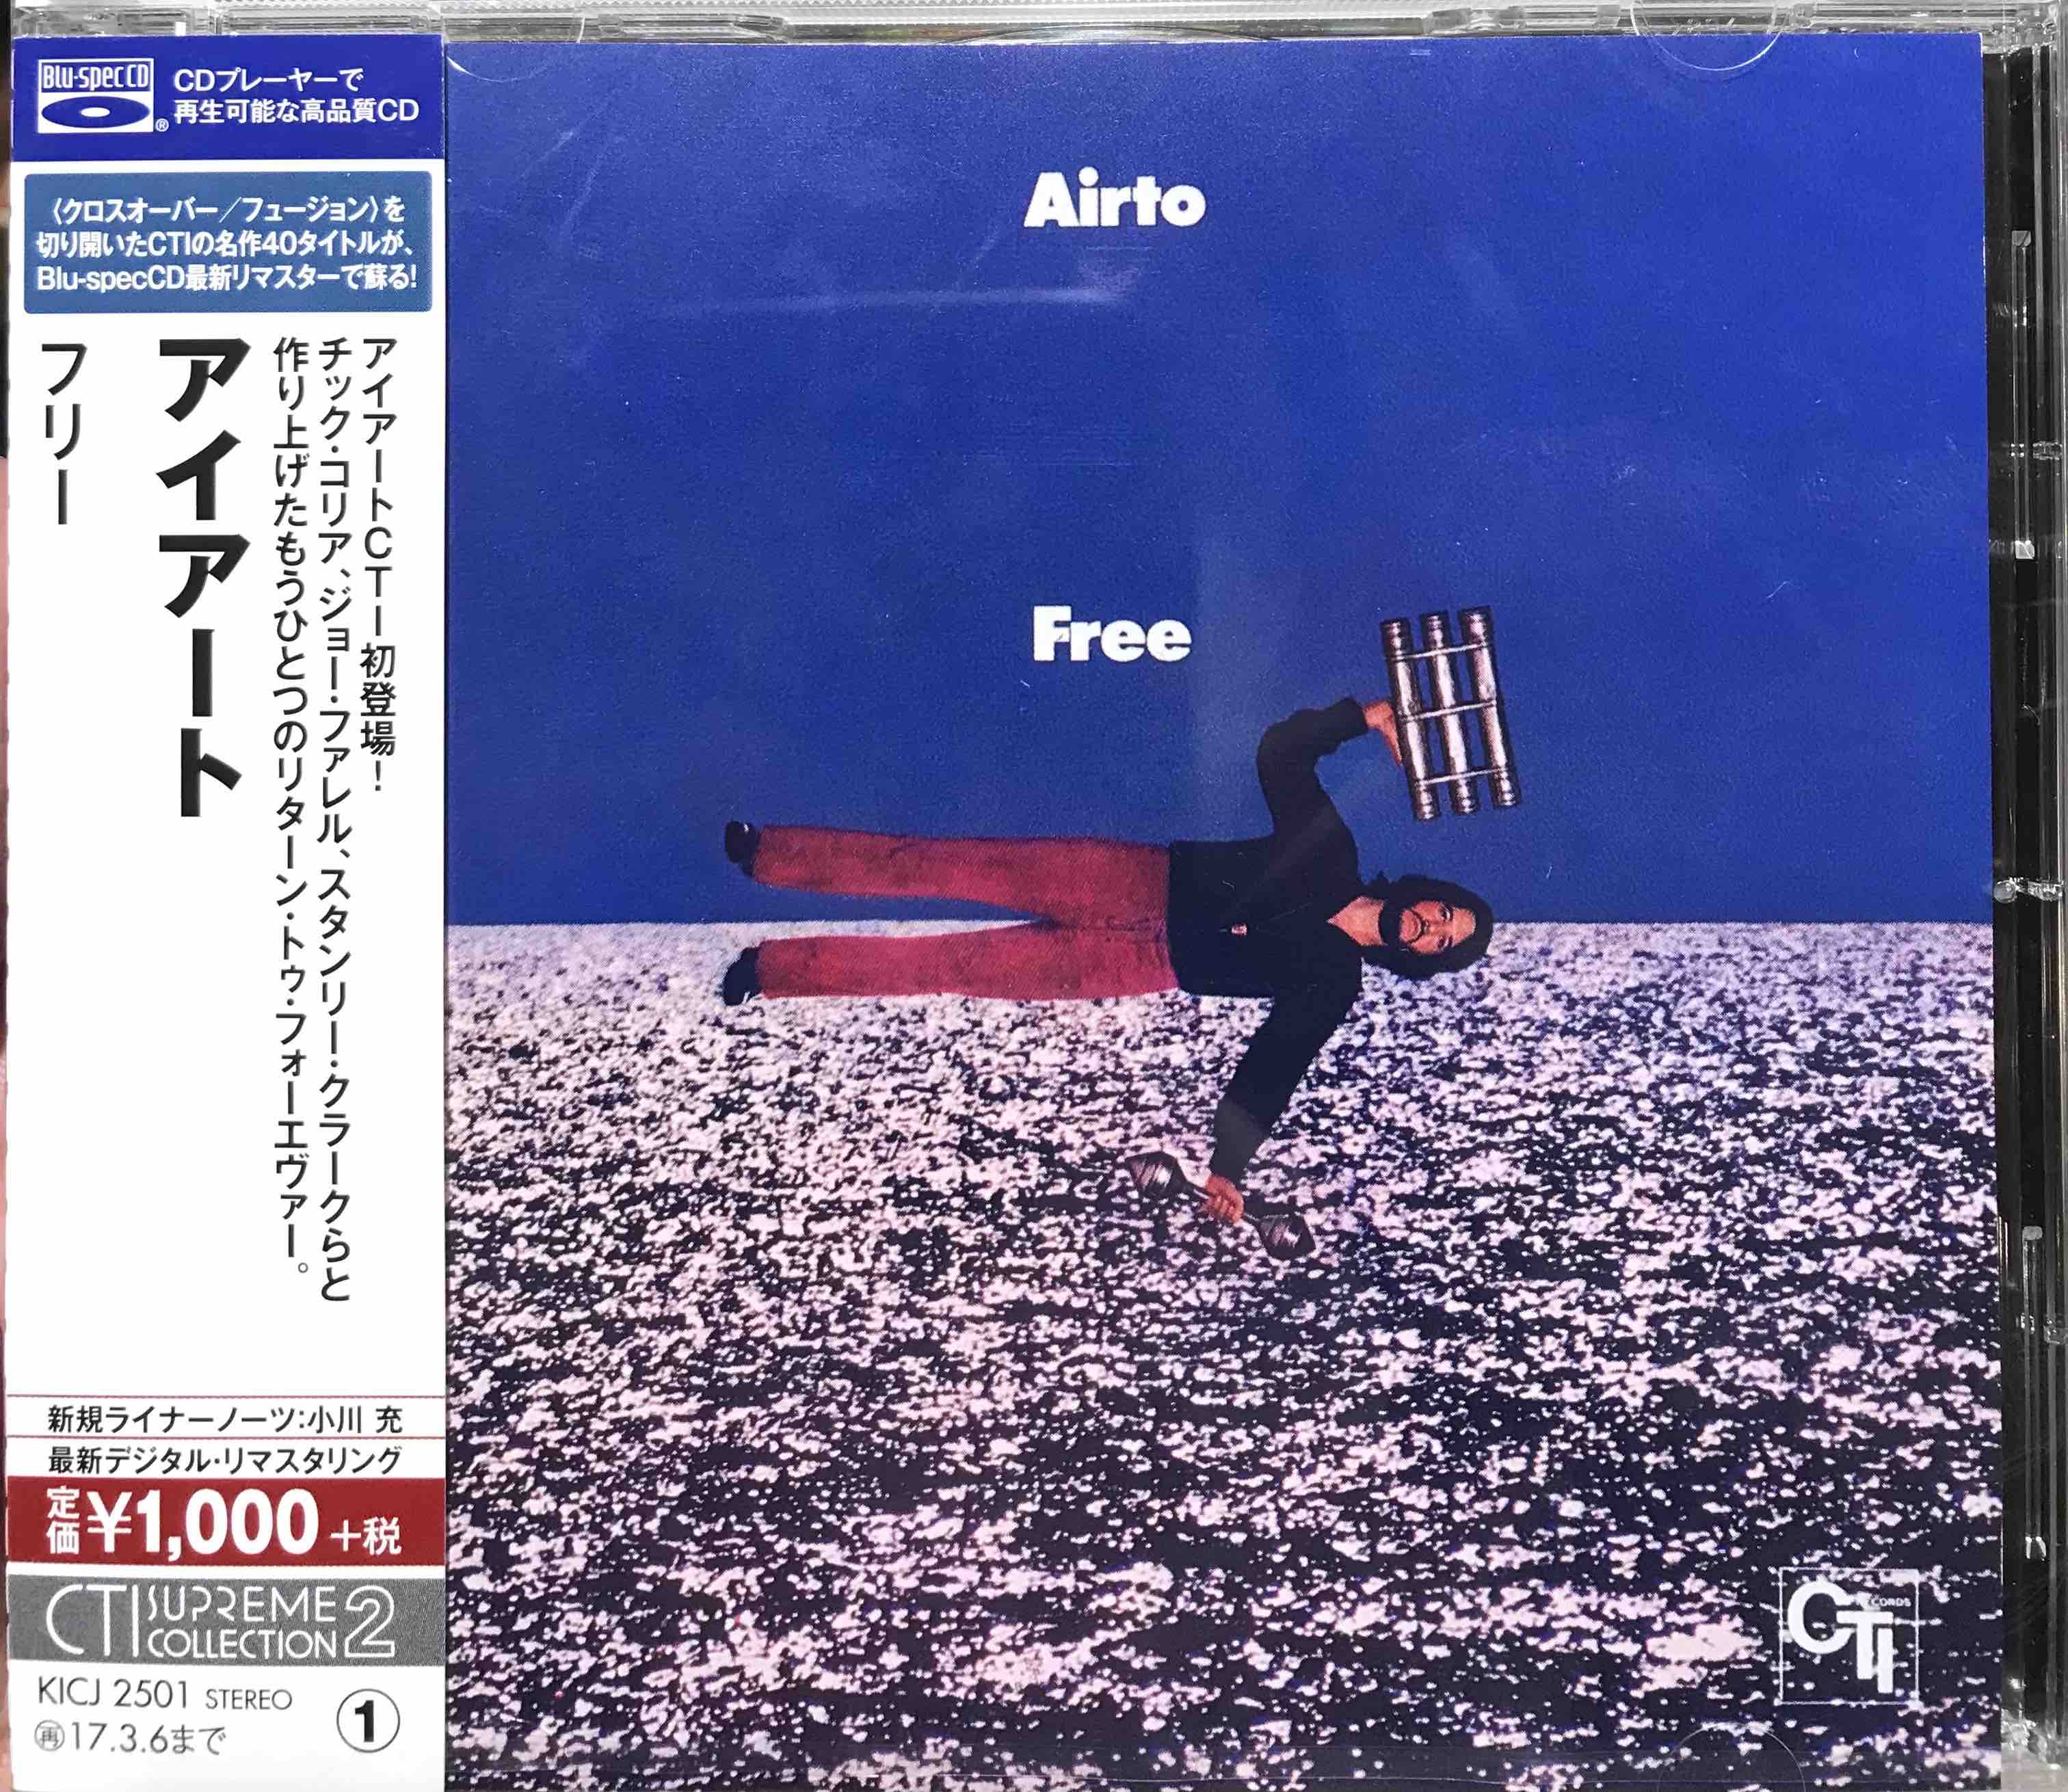 Airto – Free